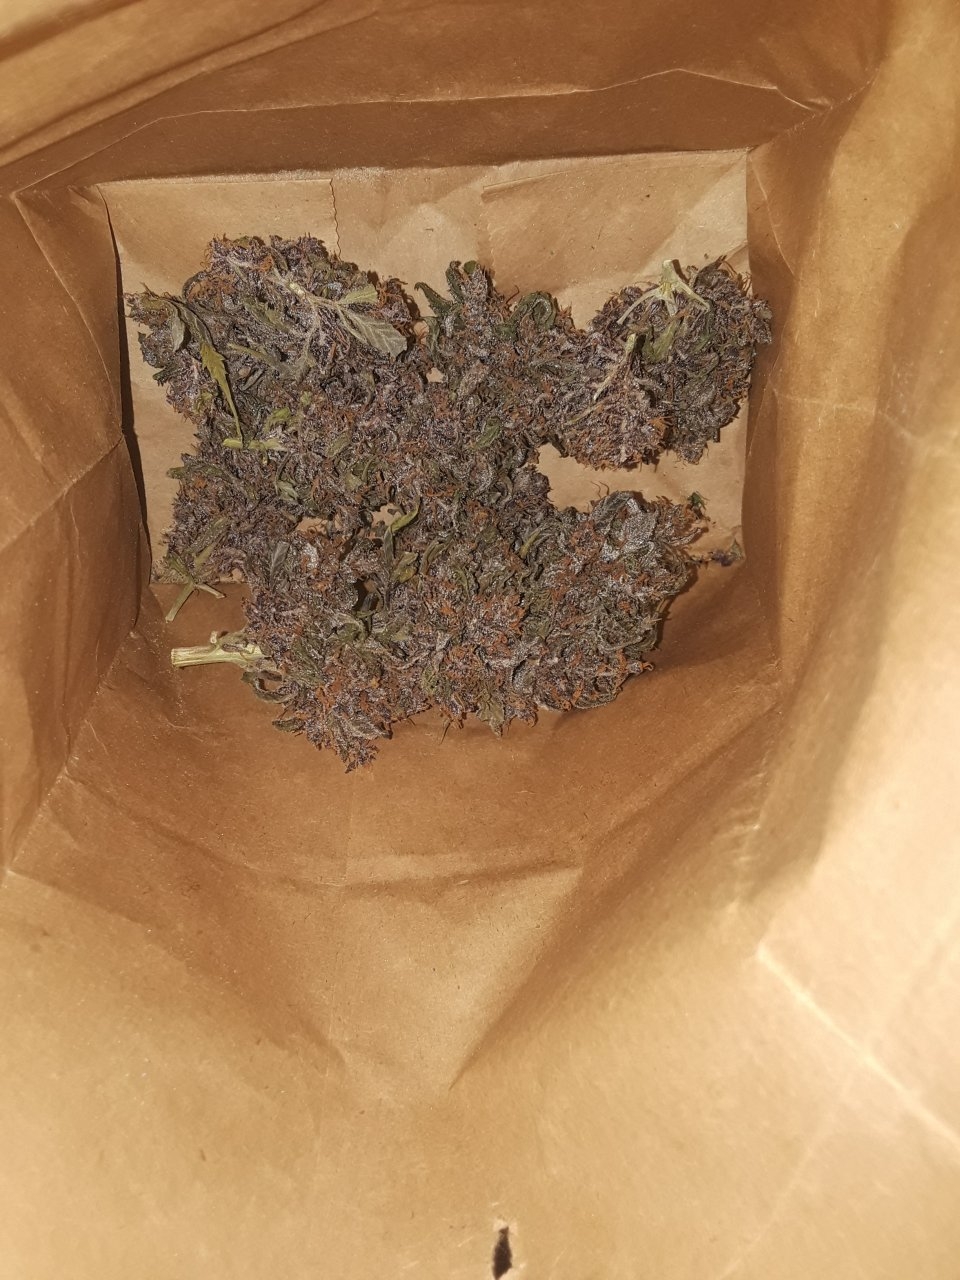 Purple Afghani x BCBD Purps